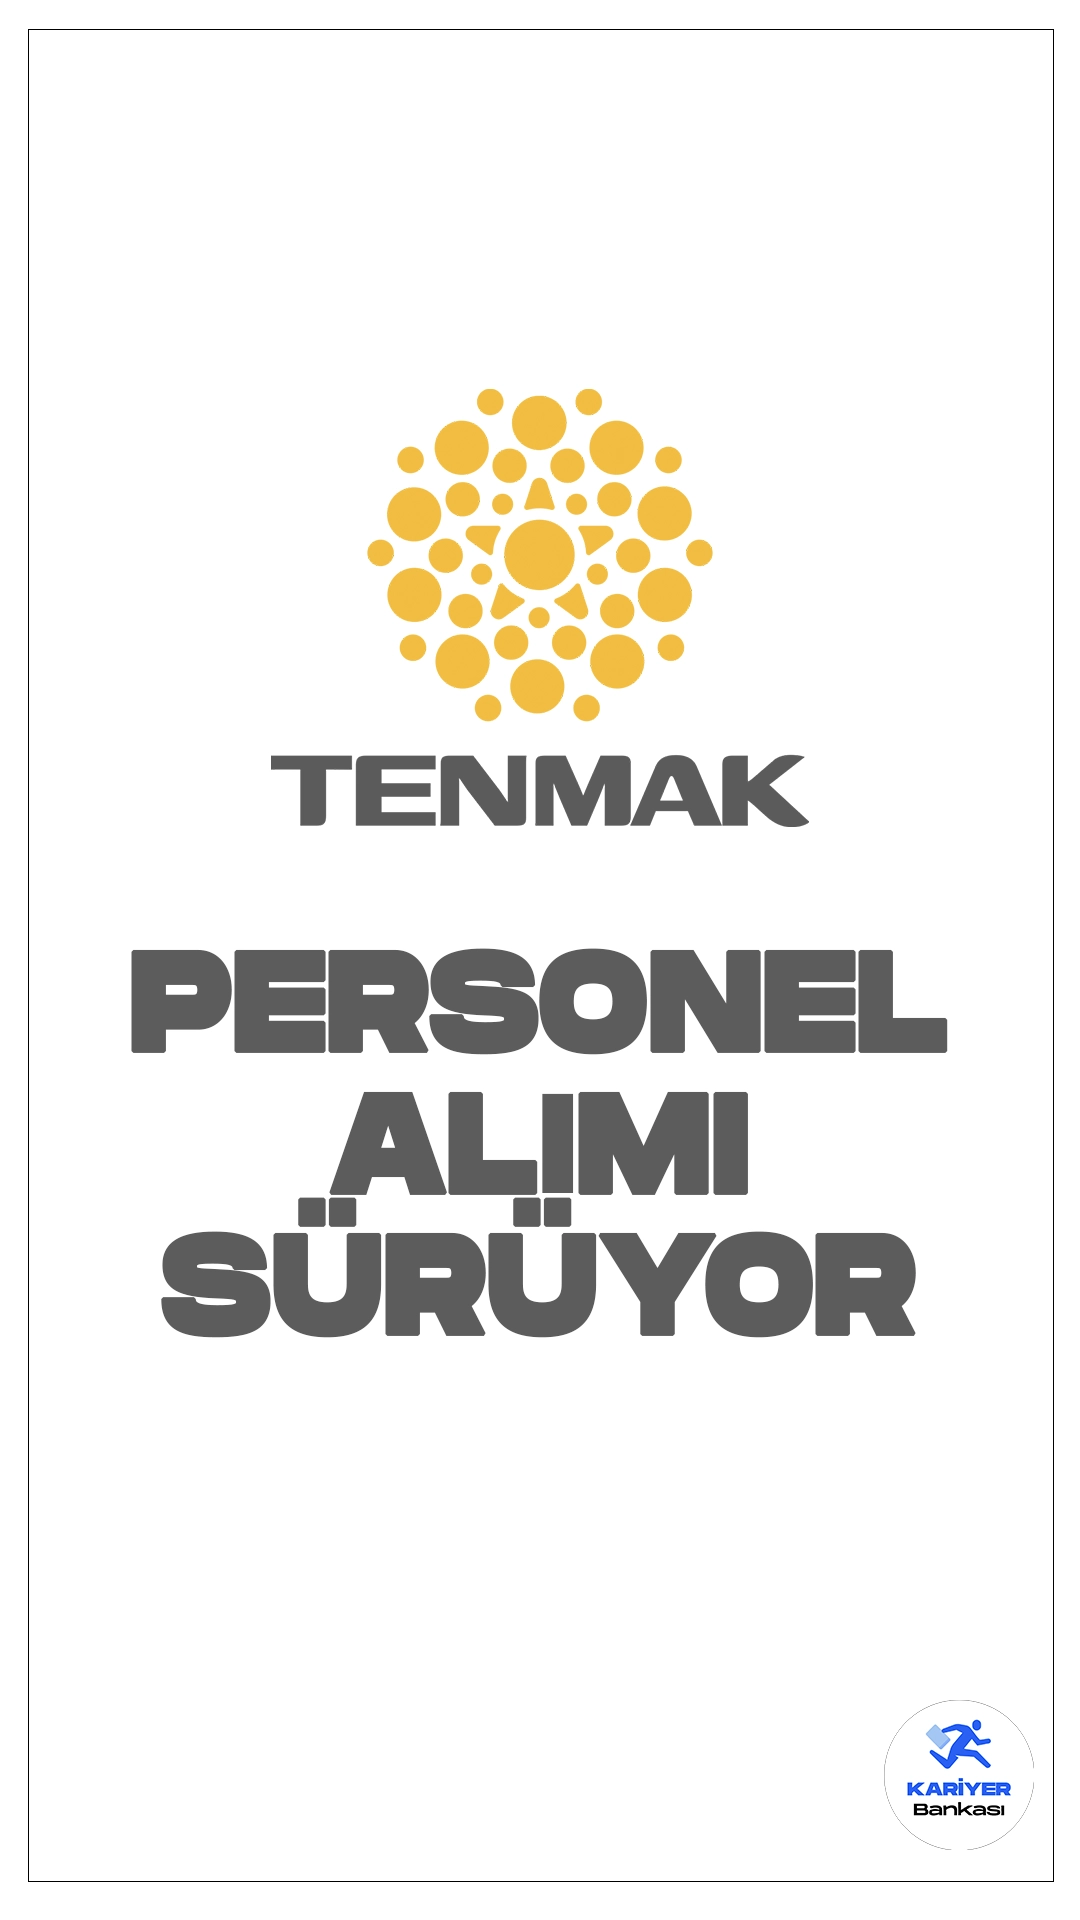 Türkiye Enerji, Nükleer ve Maden Araştırma Kurumu (TENMAK) 76 Personel Alımı Başvuruları Sürüyor.